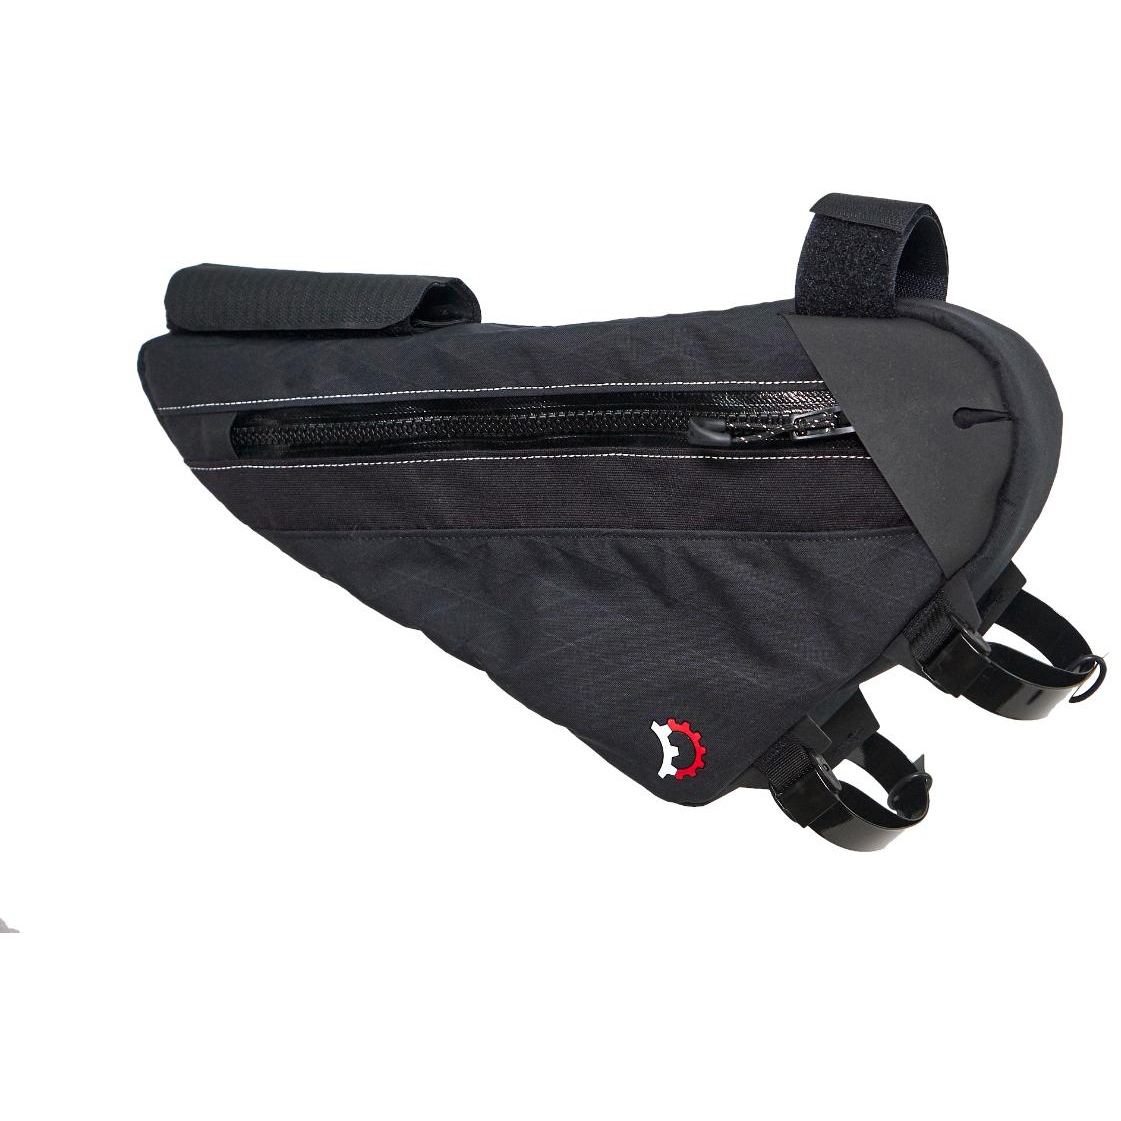 Picture of Revelate Designs Sandur Frame Bag - 2.7L - Large / Black